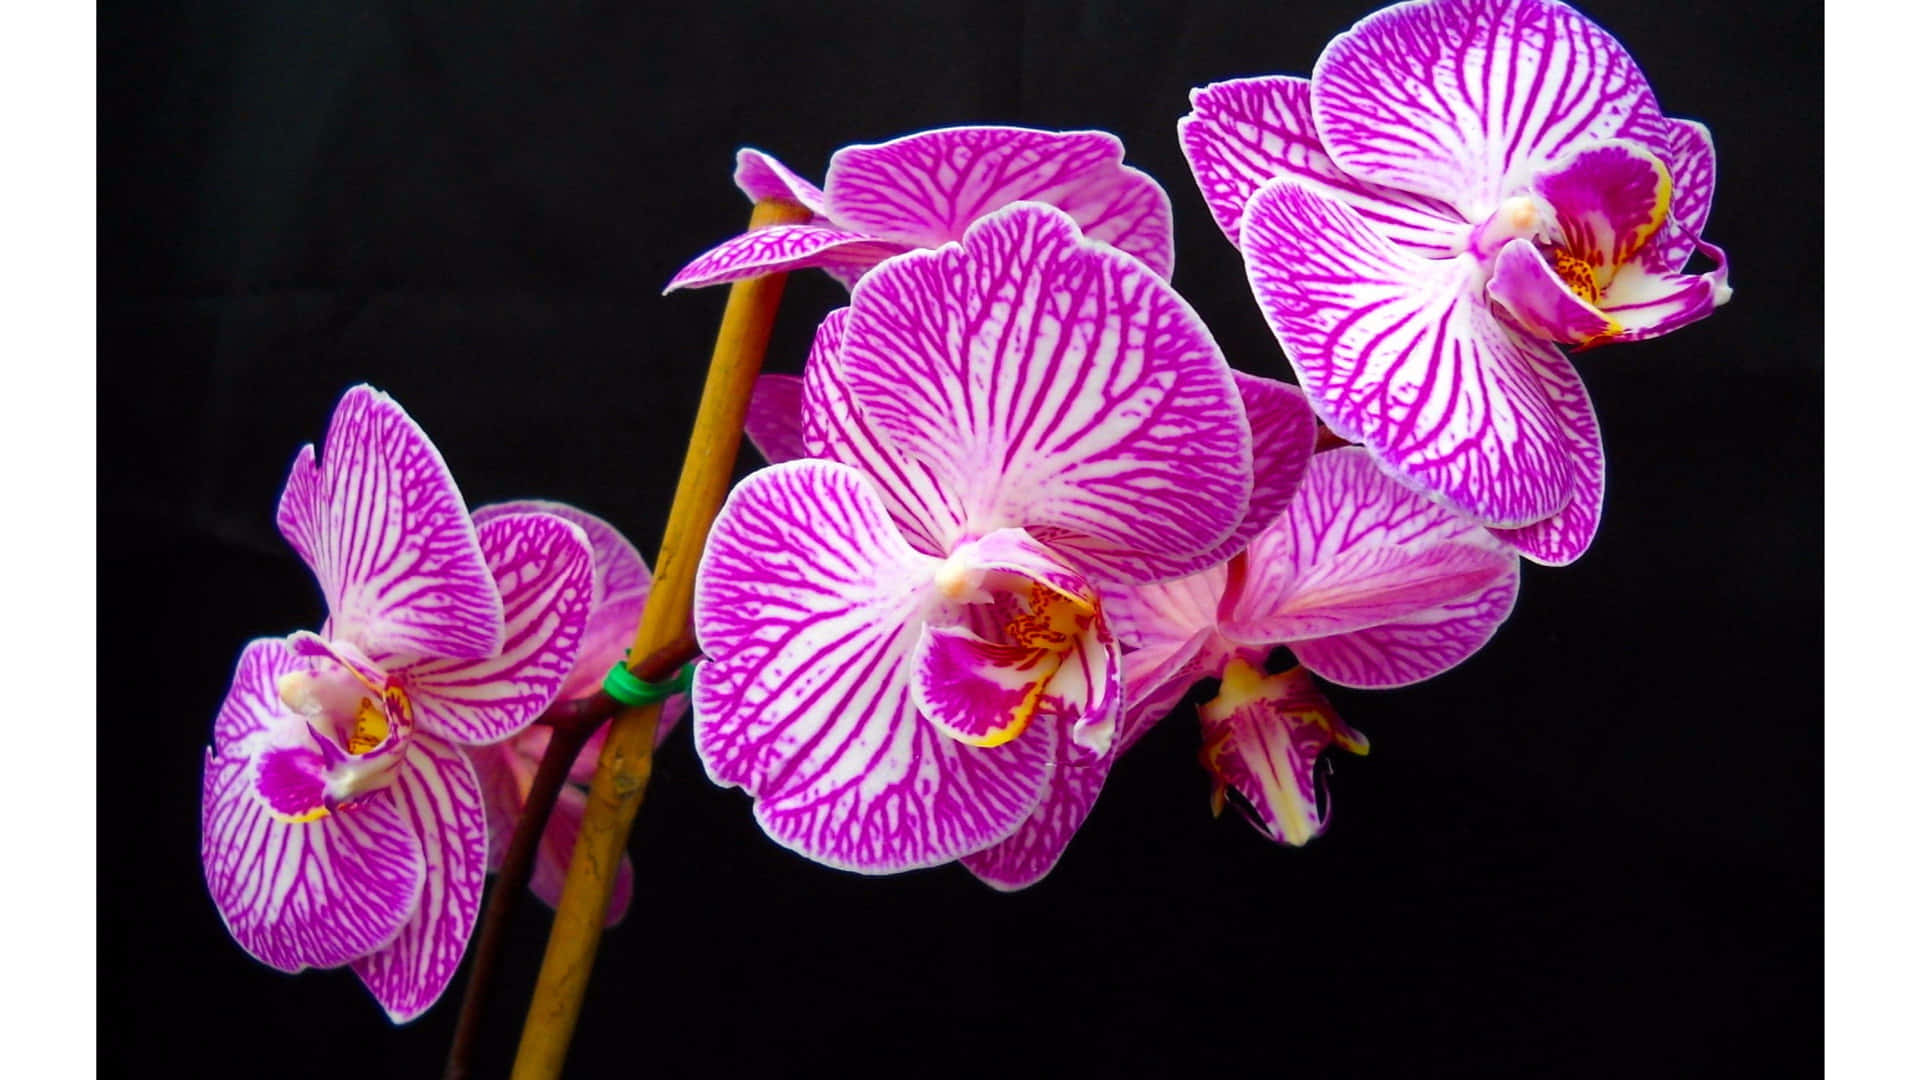 Eineviolette Orchidee